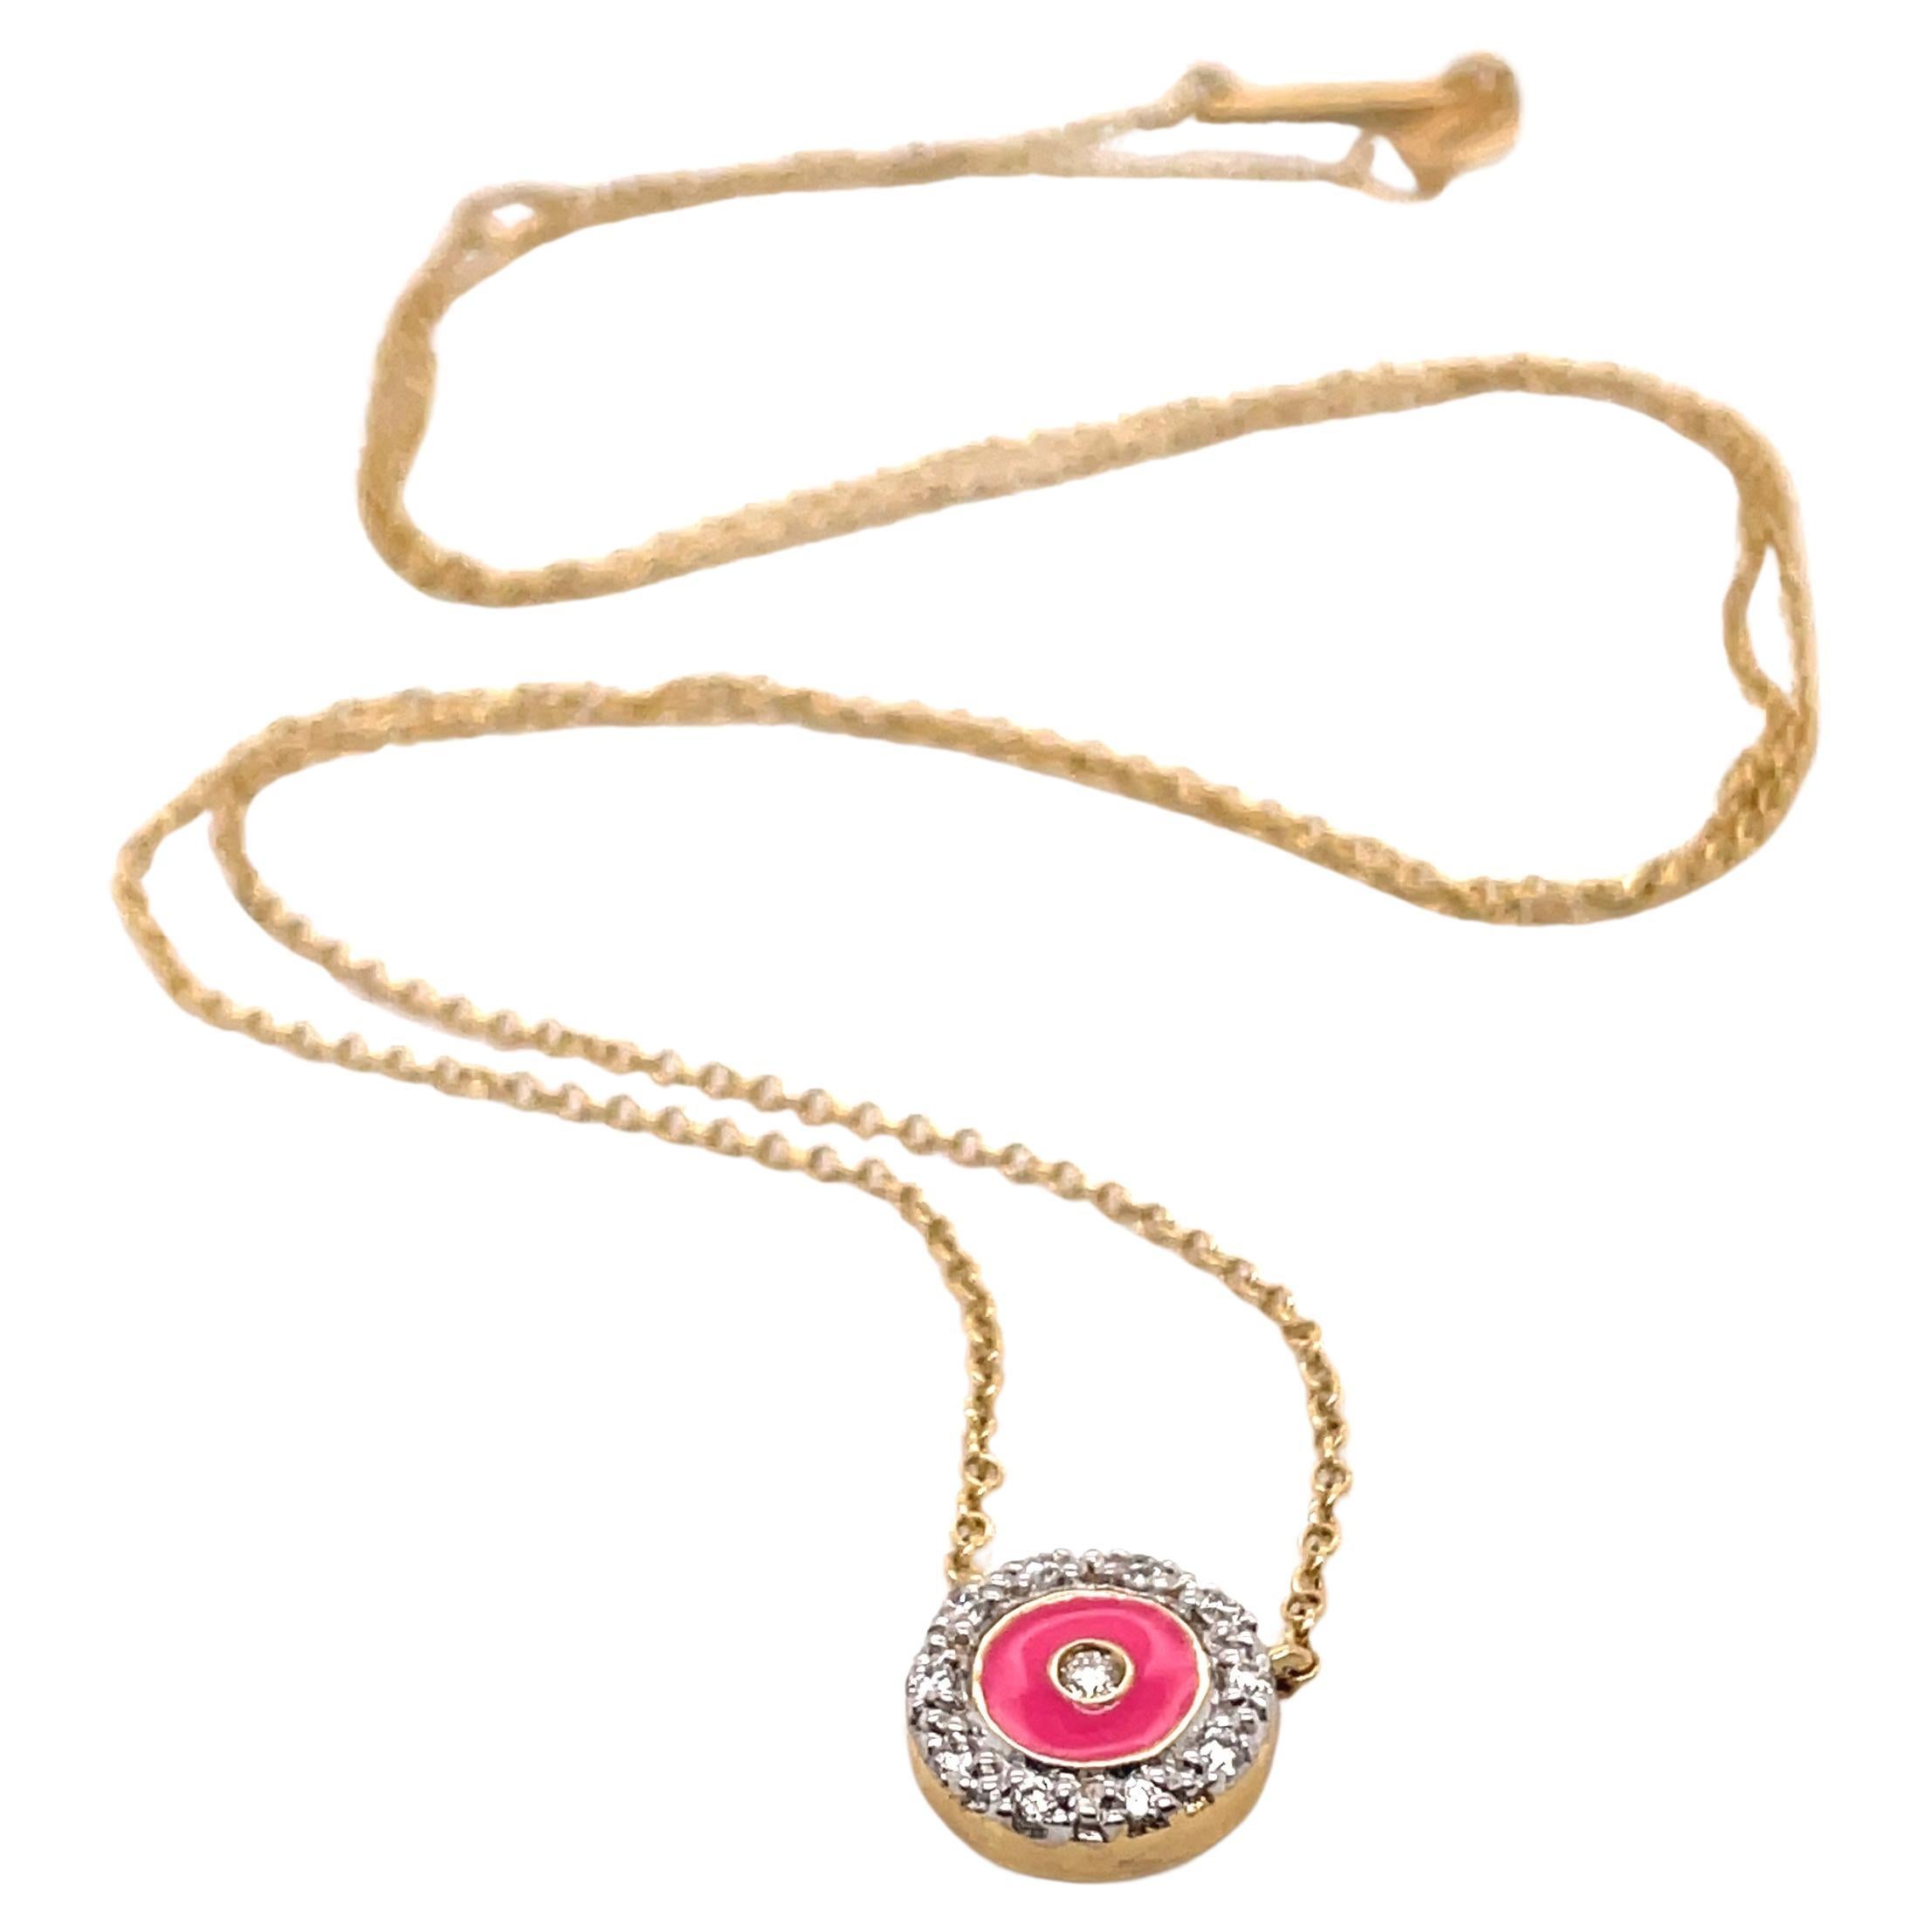 Halskette aus rosa Emaille und Diamanten, Kreis-Anhänger, 14K Gelbgold Damen-Halskette